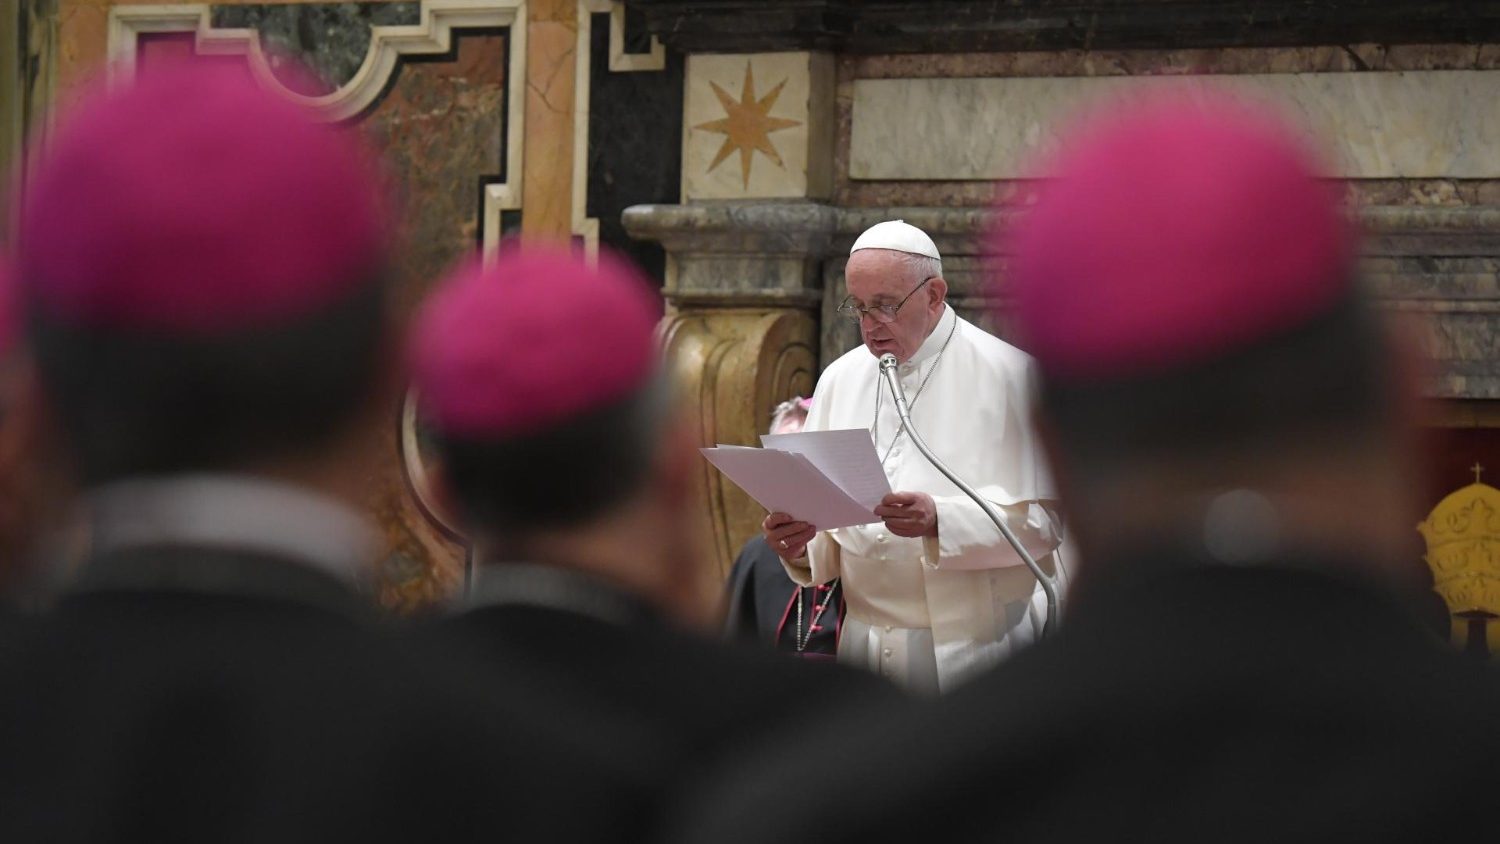 Papa Francisco nomeia novo bispo para a Diocese de Piracicaba